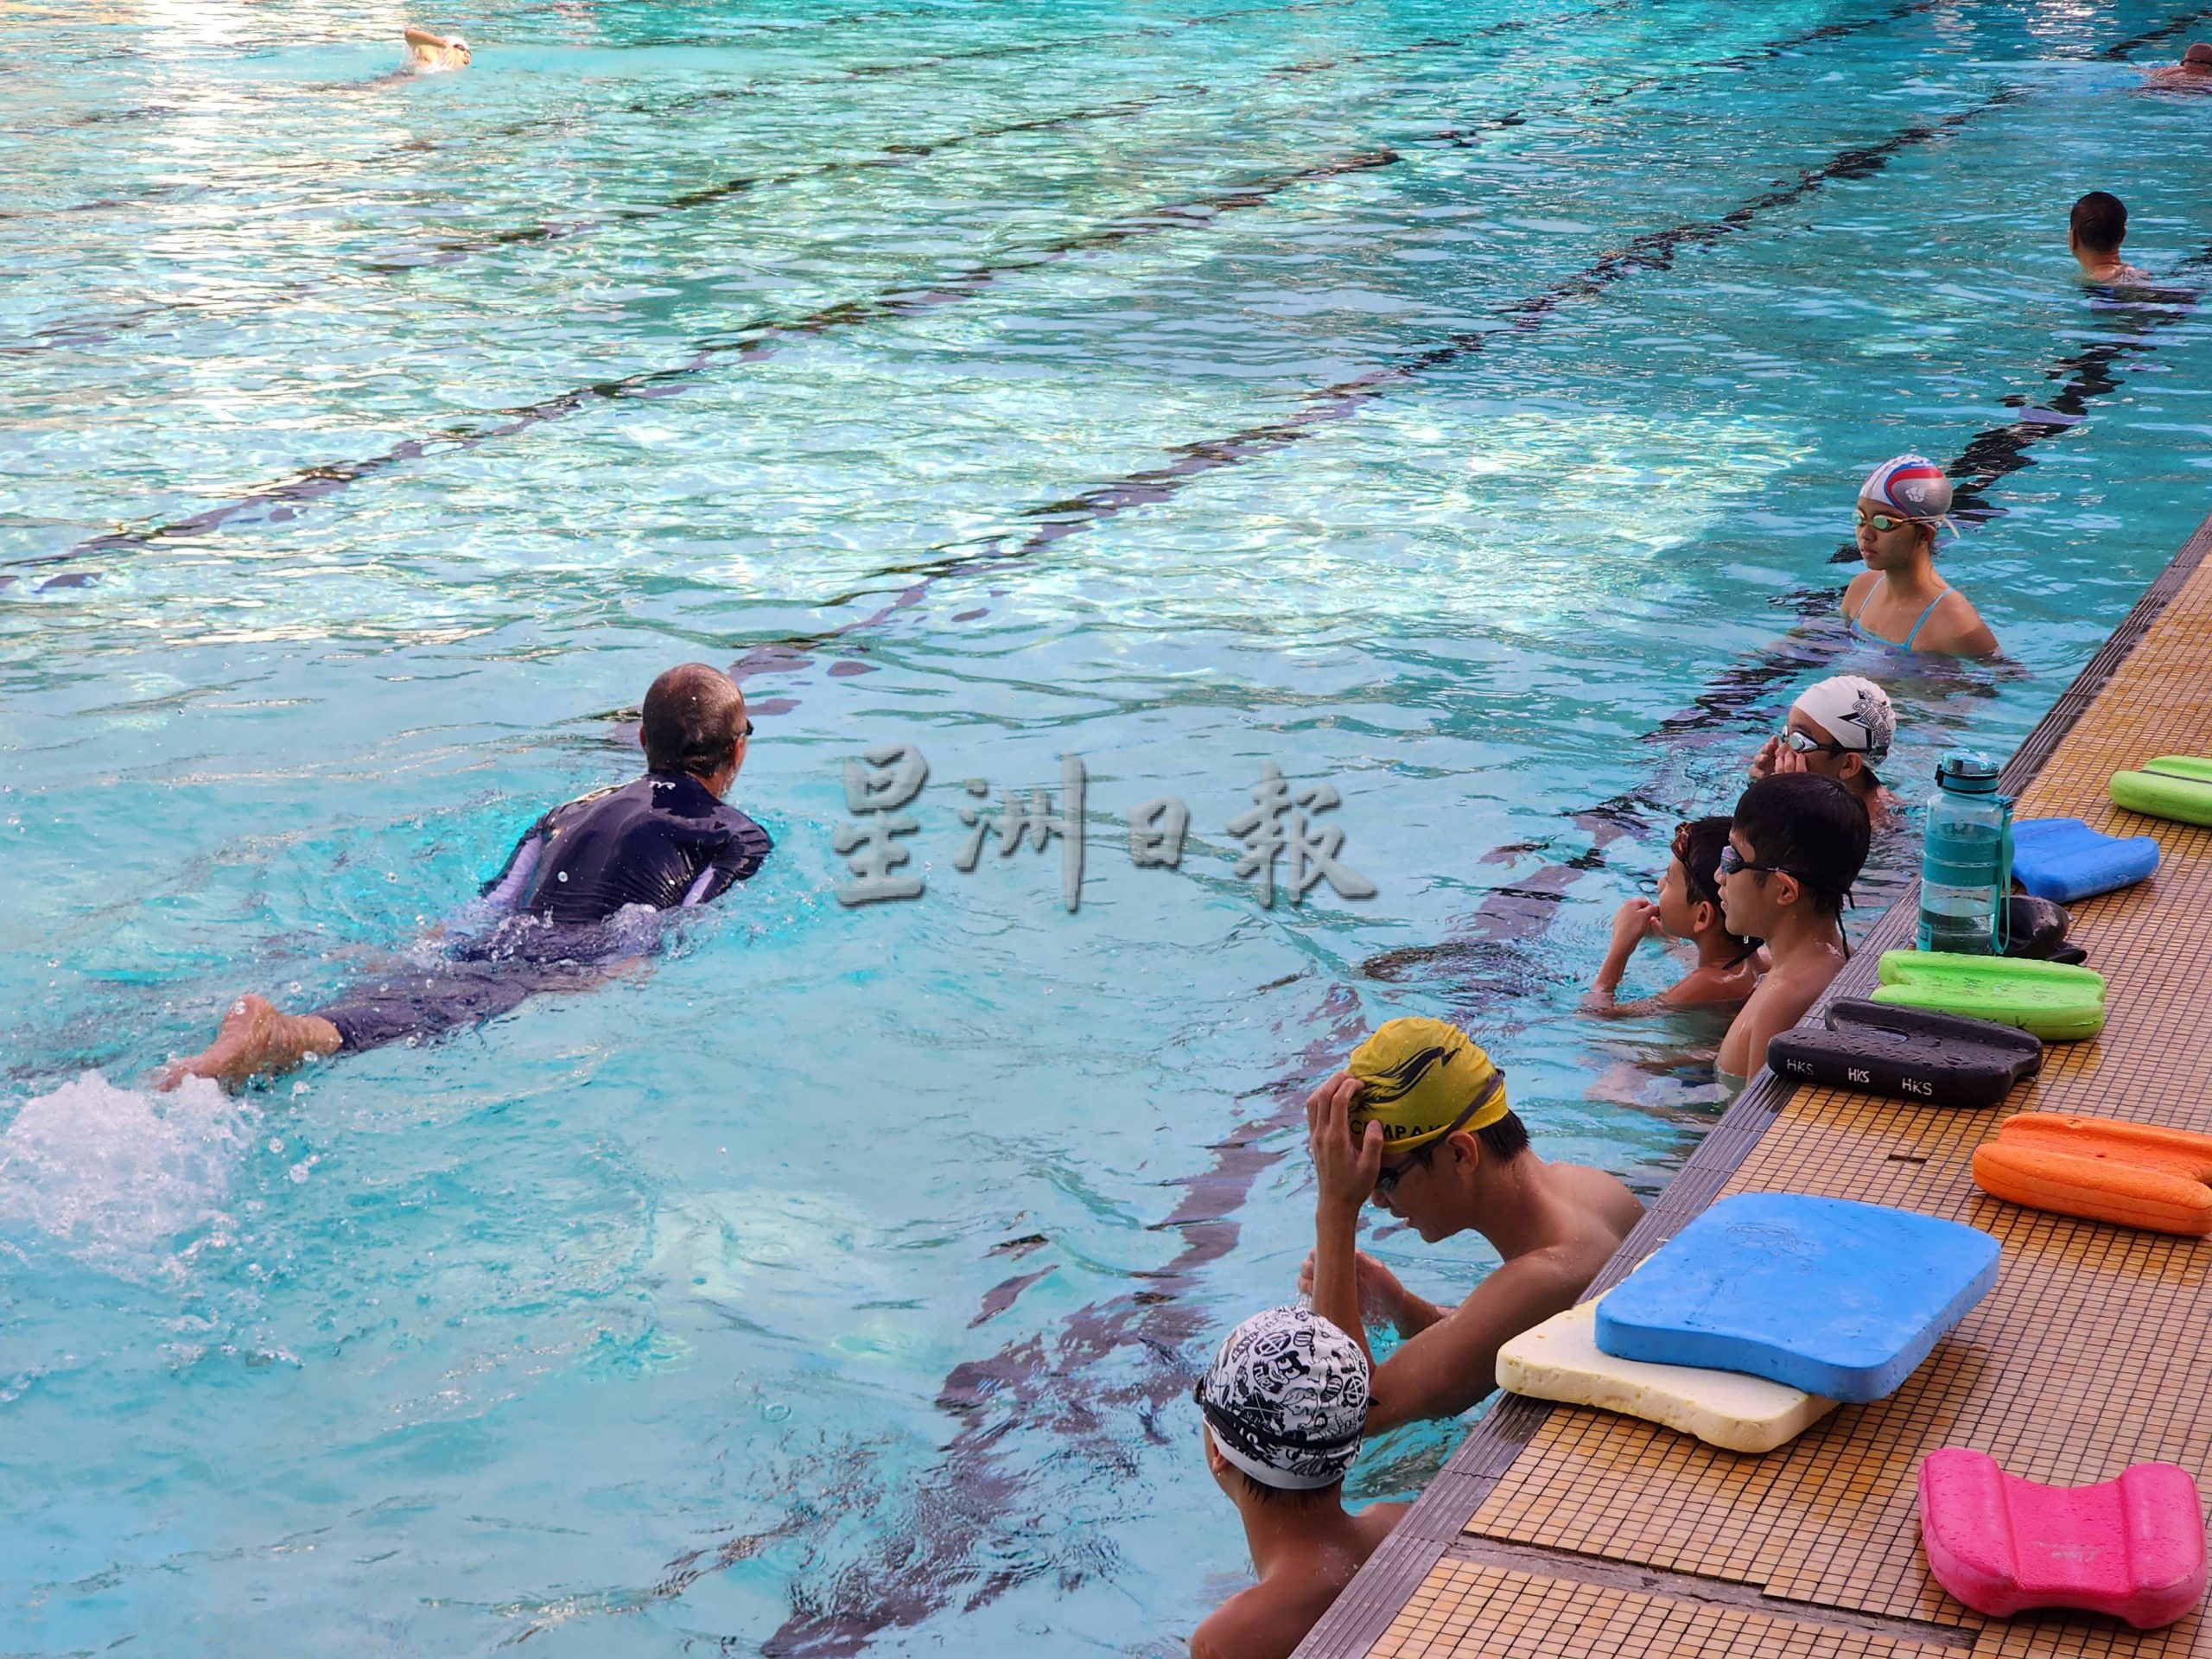 （古城第二版主文）专栏《你动摇了吗》：学习游泳先培养兴趣及根据情况选择泳式